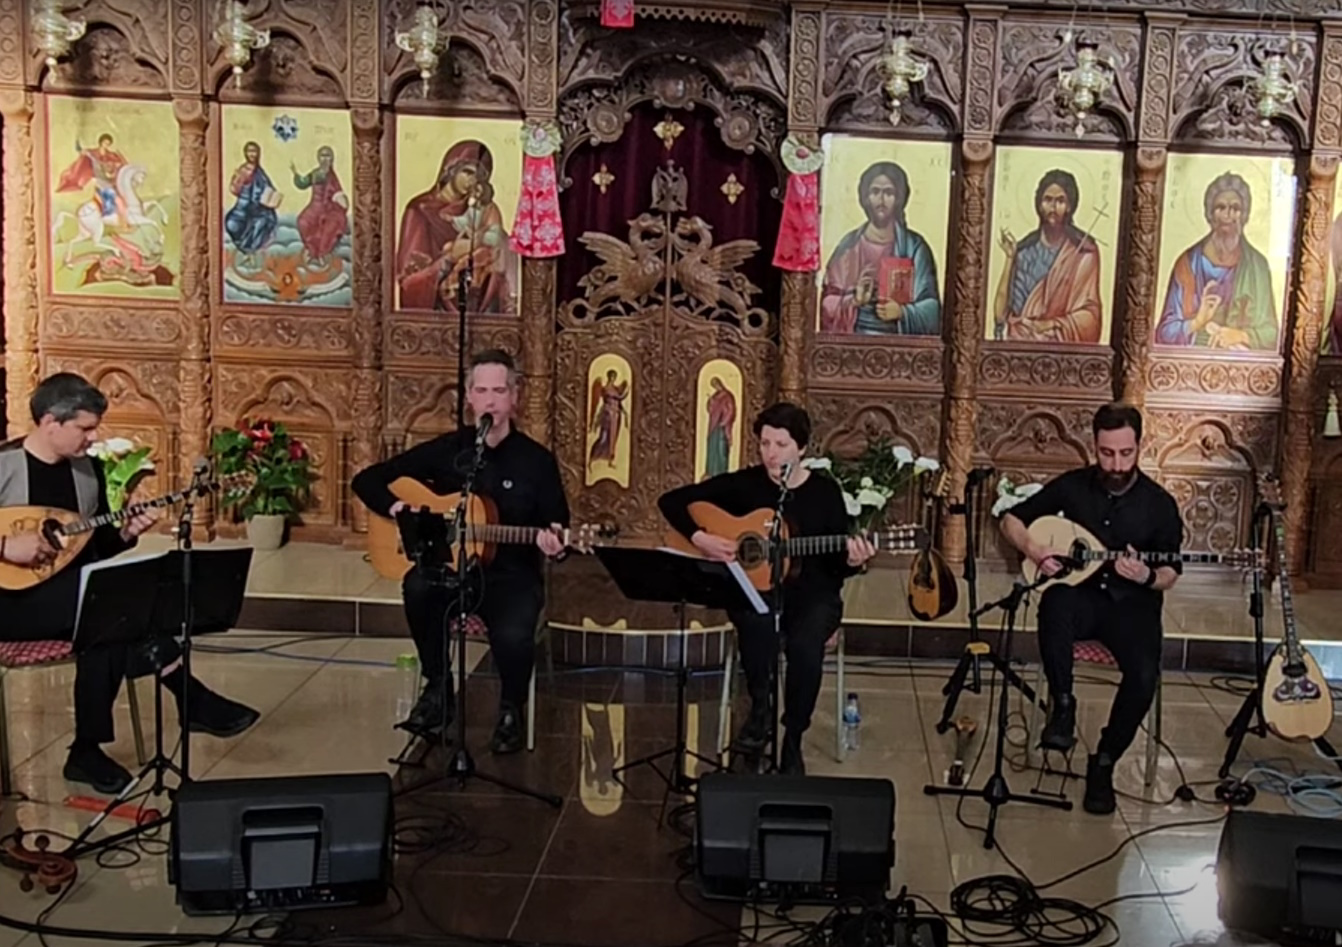 Σάλος με συναυλία σε ελληνική εκκλησία στην Αγγλία – Το μπουζούκι και τα παλαμάκια ξεσήκωσαν θύελλα αντιδράσεων